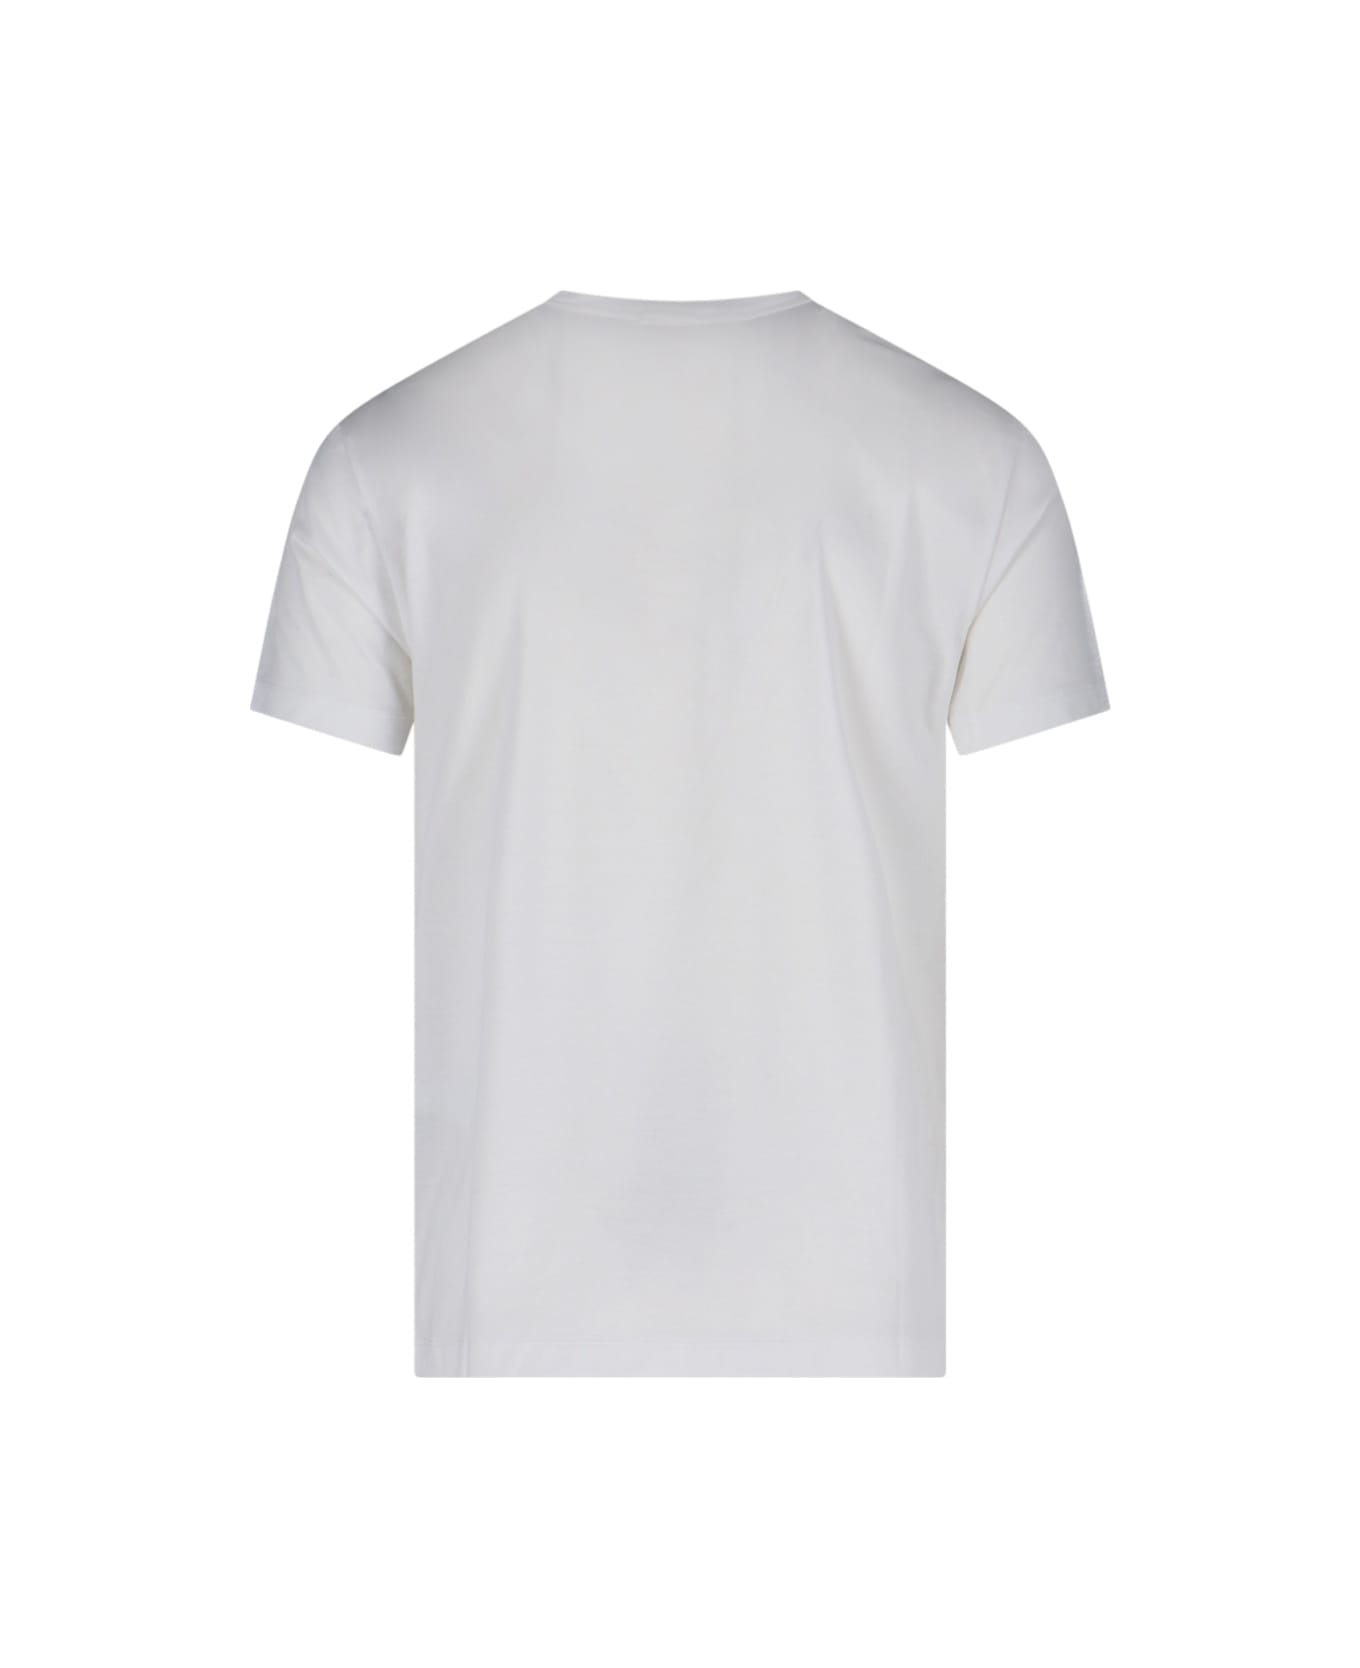 Emporio Armani Logo T-shirt - Bianco o.logo